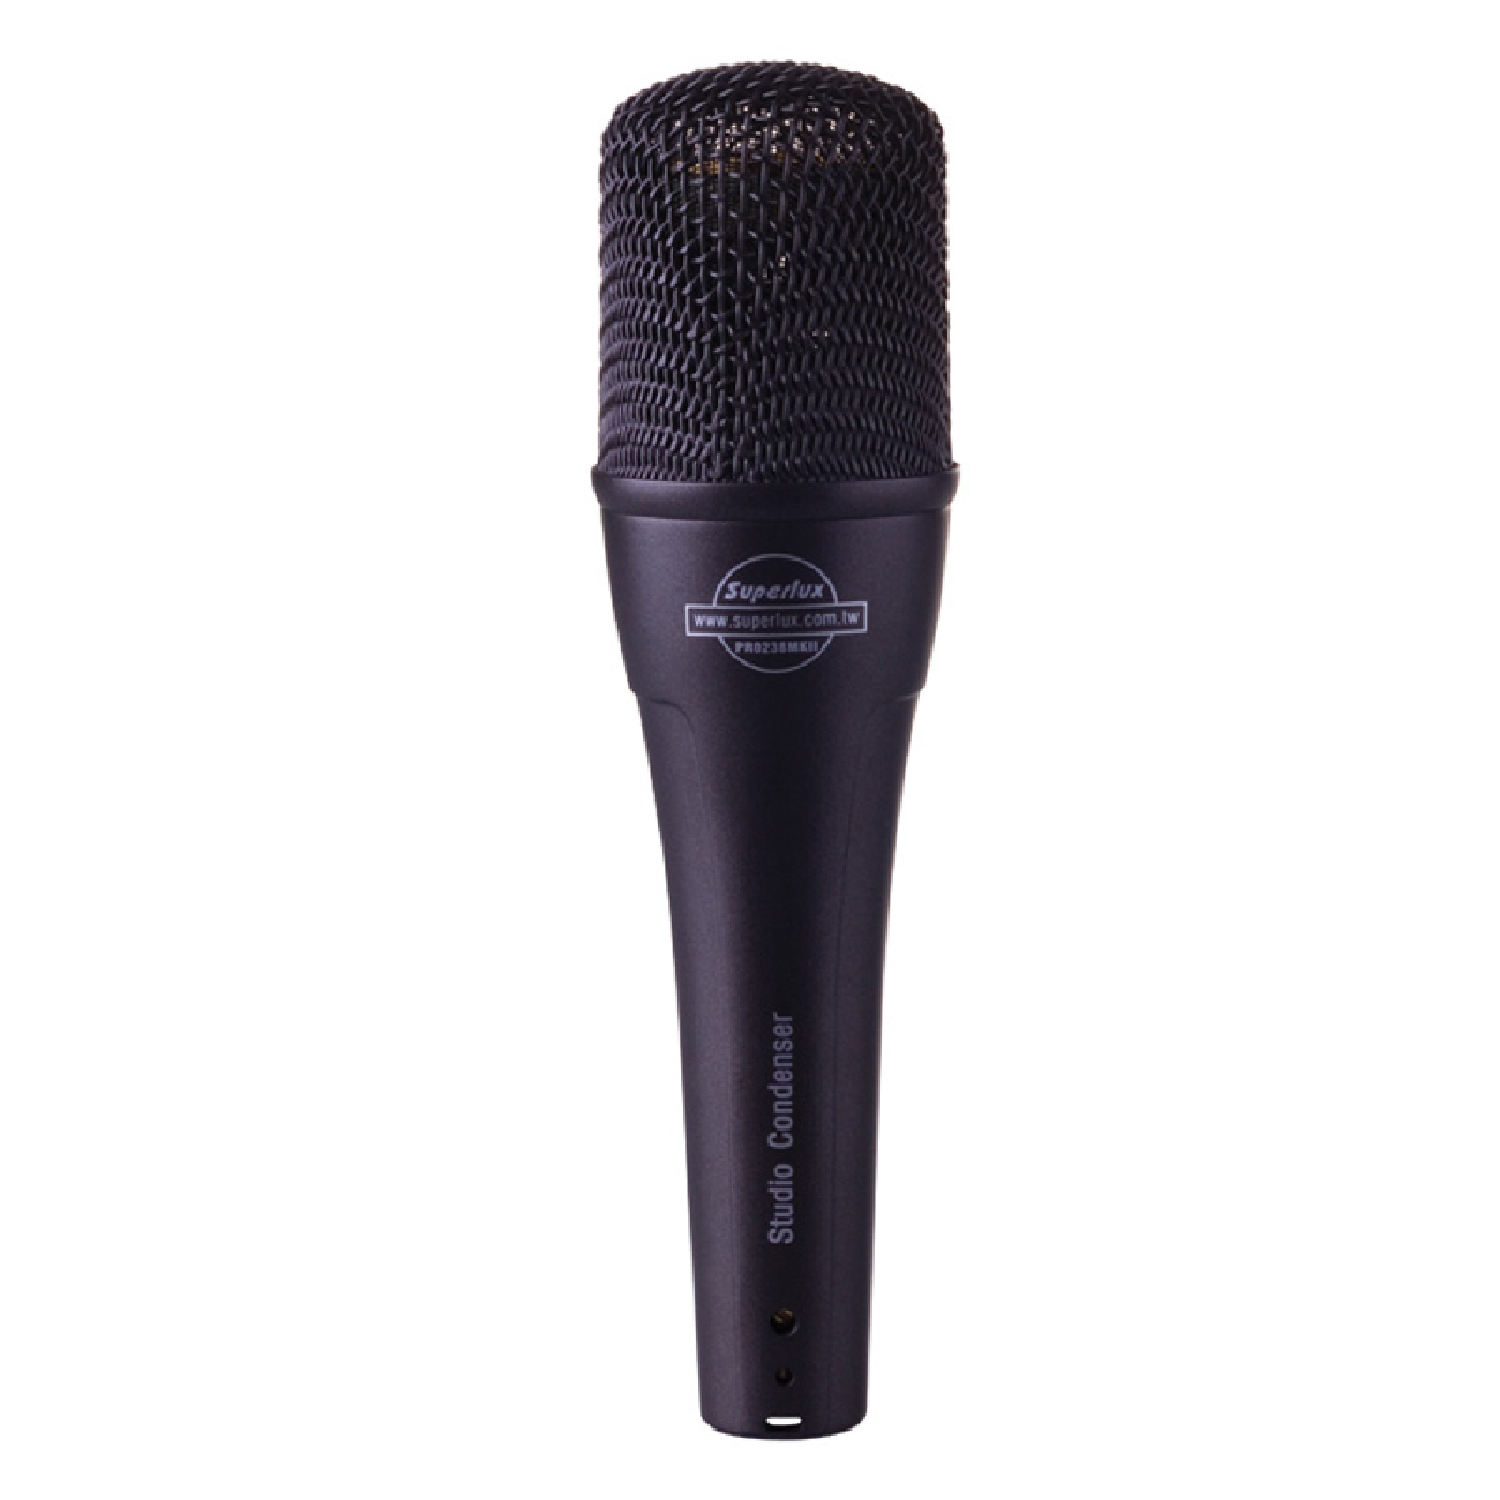 Cardioid Condenser Microphone   PRO238MK2 superlux